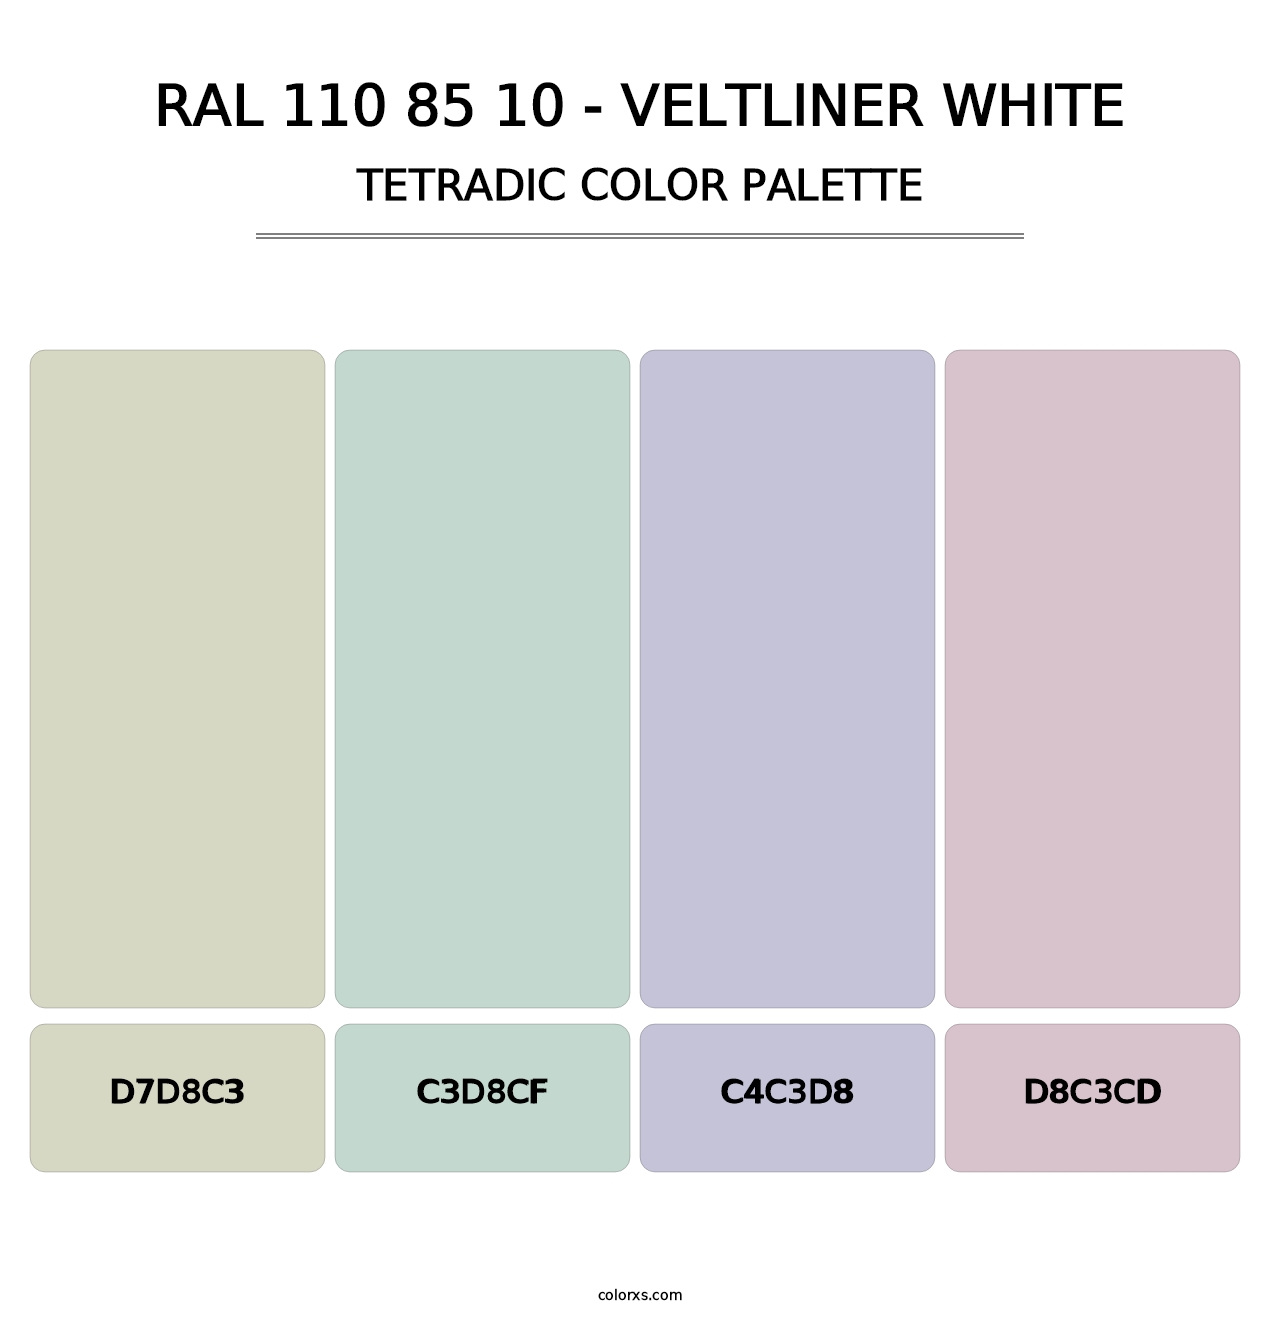 RAL 110 85 10 - Veltliner White - Tetradic Color Palette